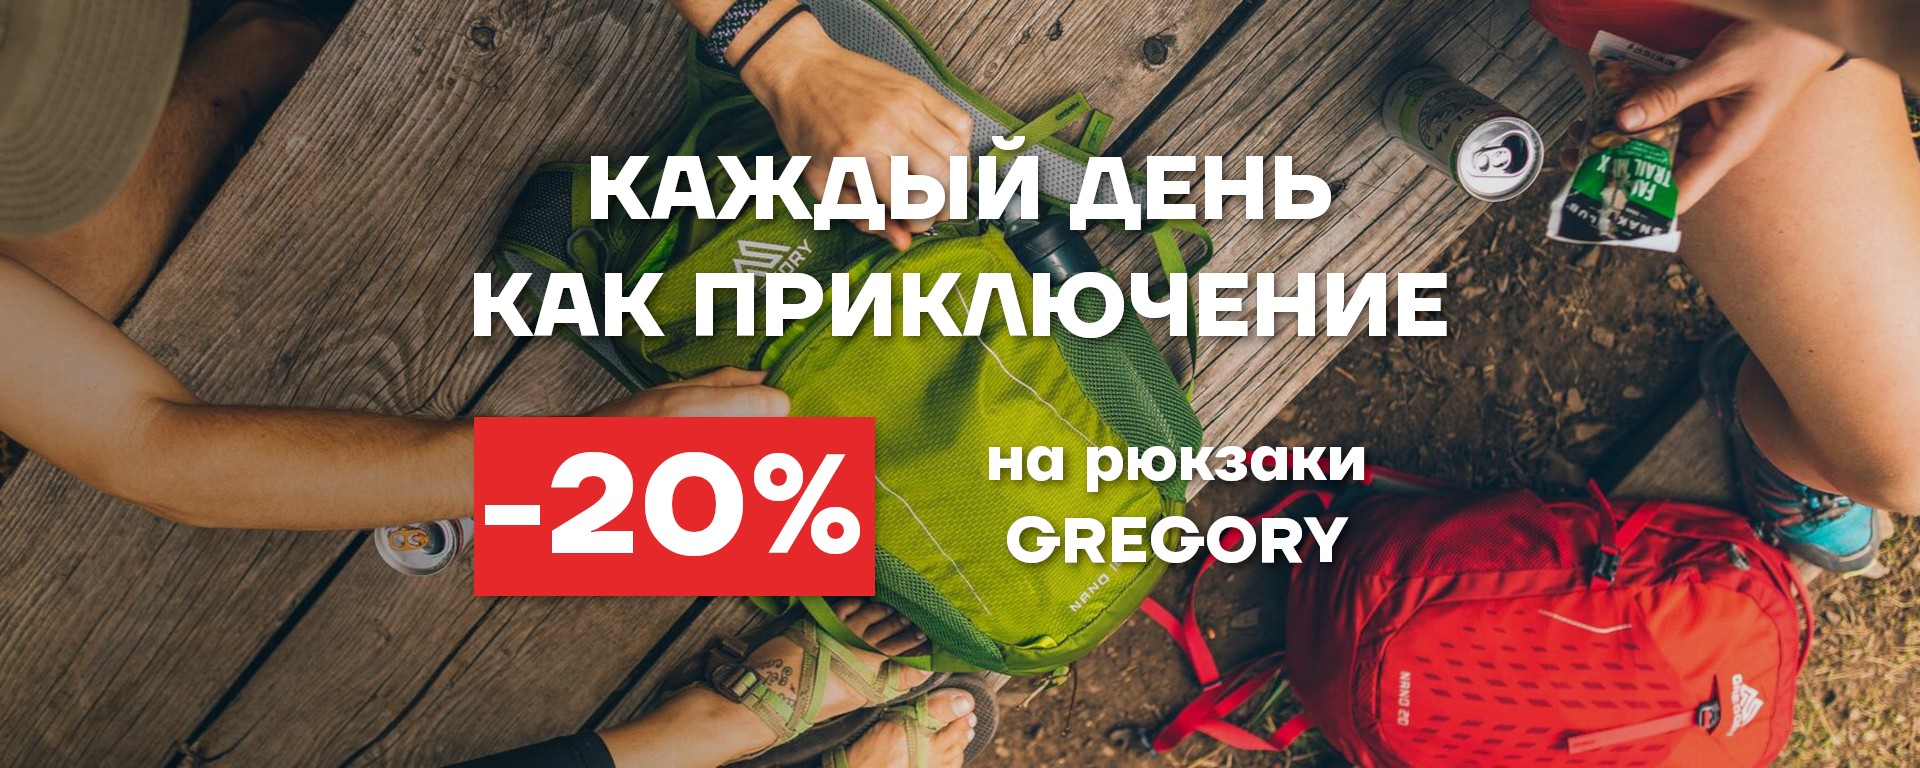 Рюкзаки Gregory 20%